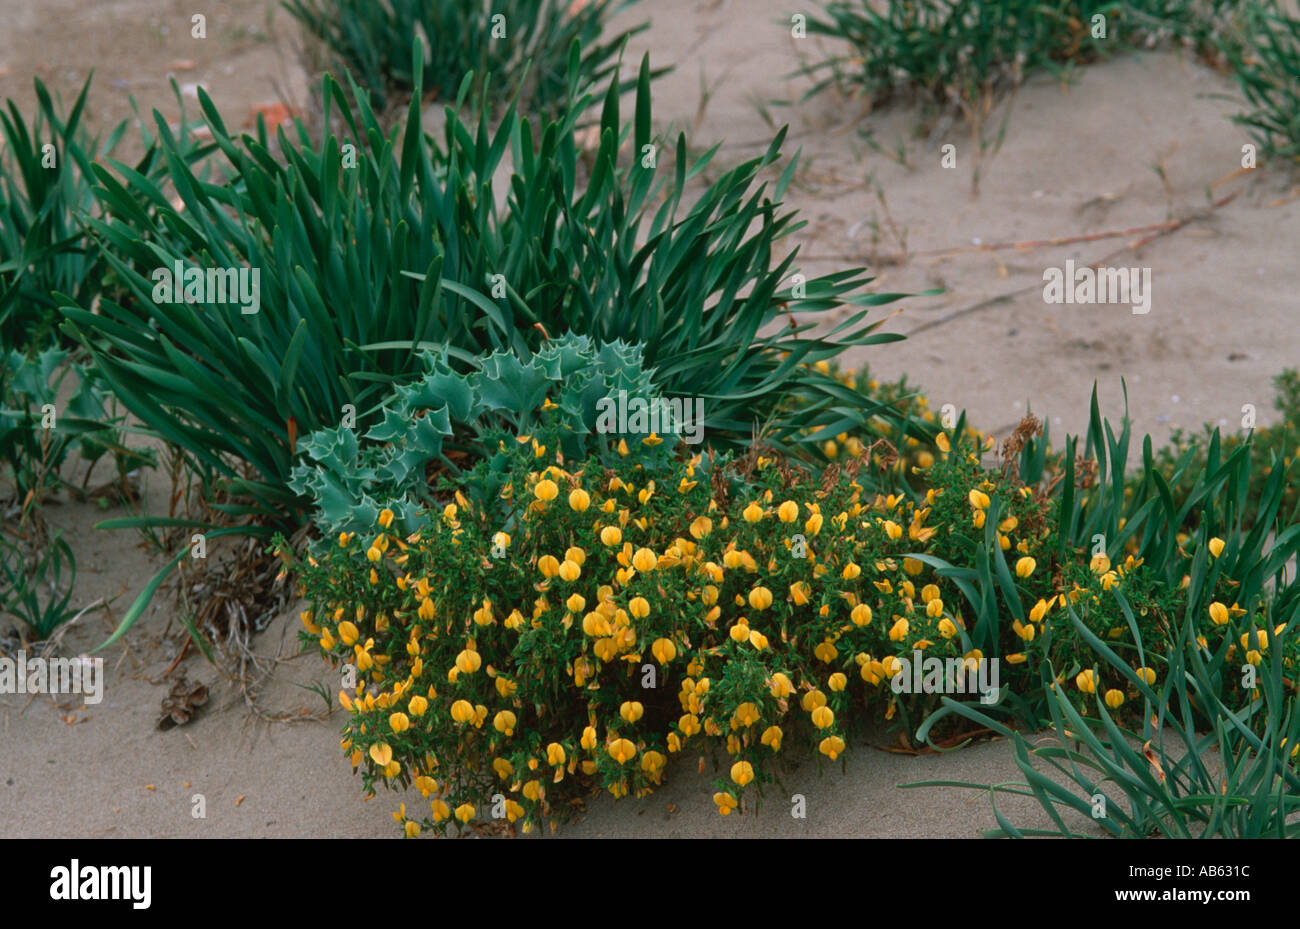 Pancratium maritimum Eryngium sp and Ononis natrix Mediterranean dune vegetal community Stock Photo